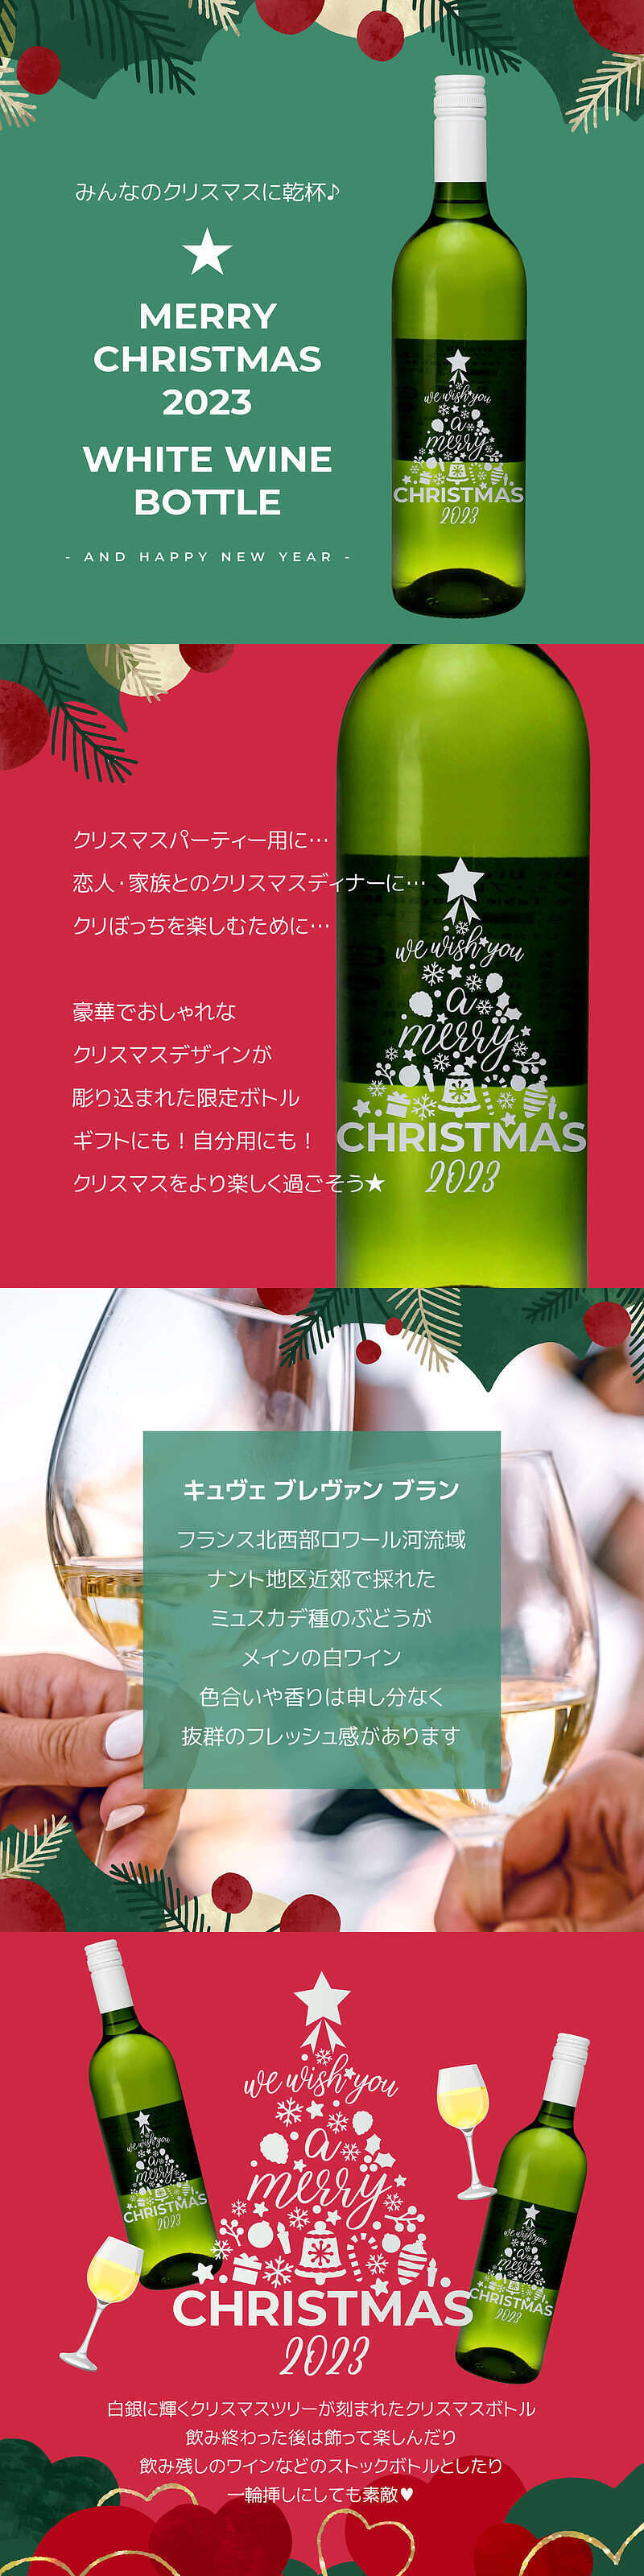 クリスマスツリーボトル 白ワインの説明